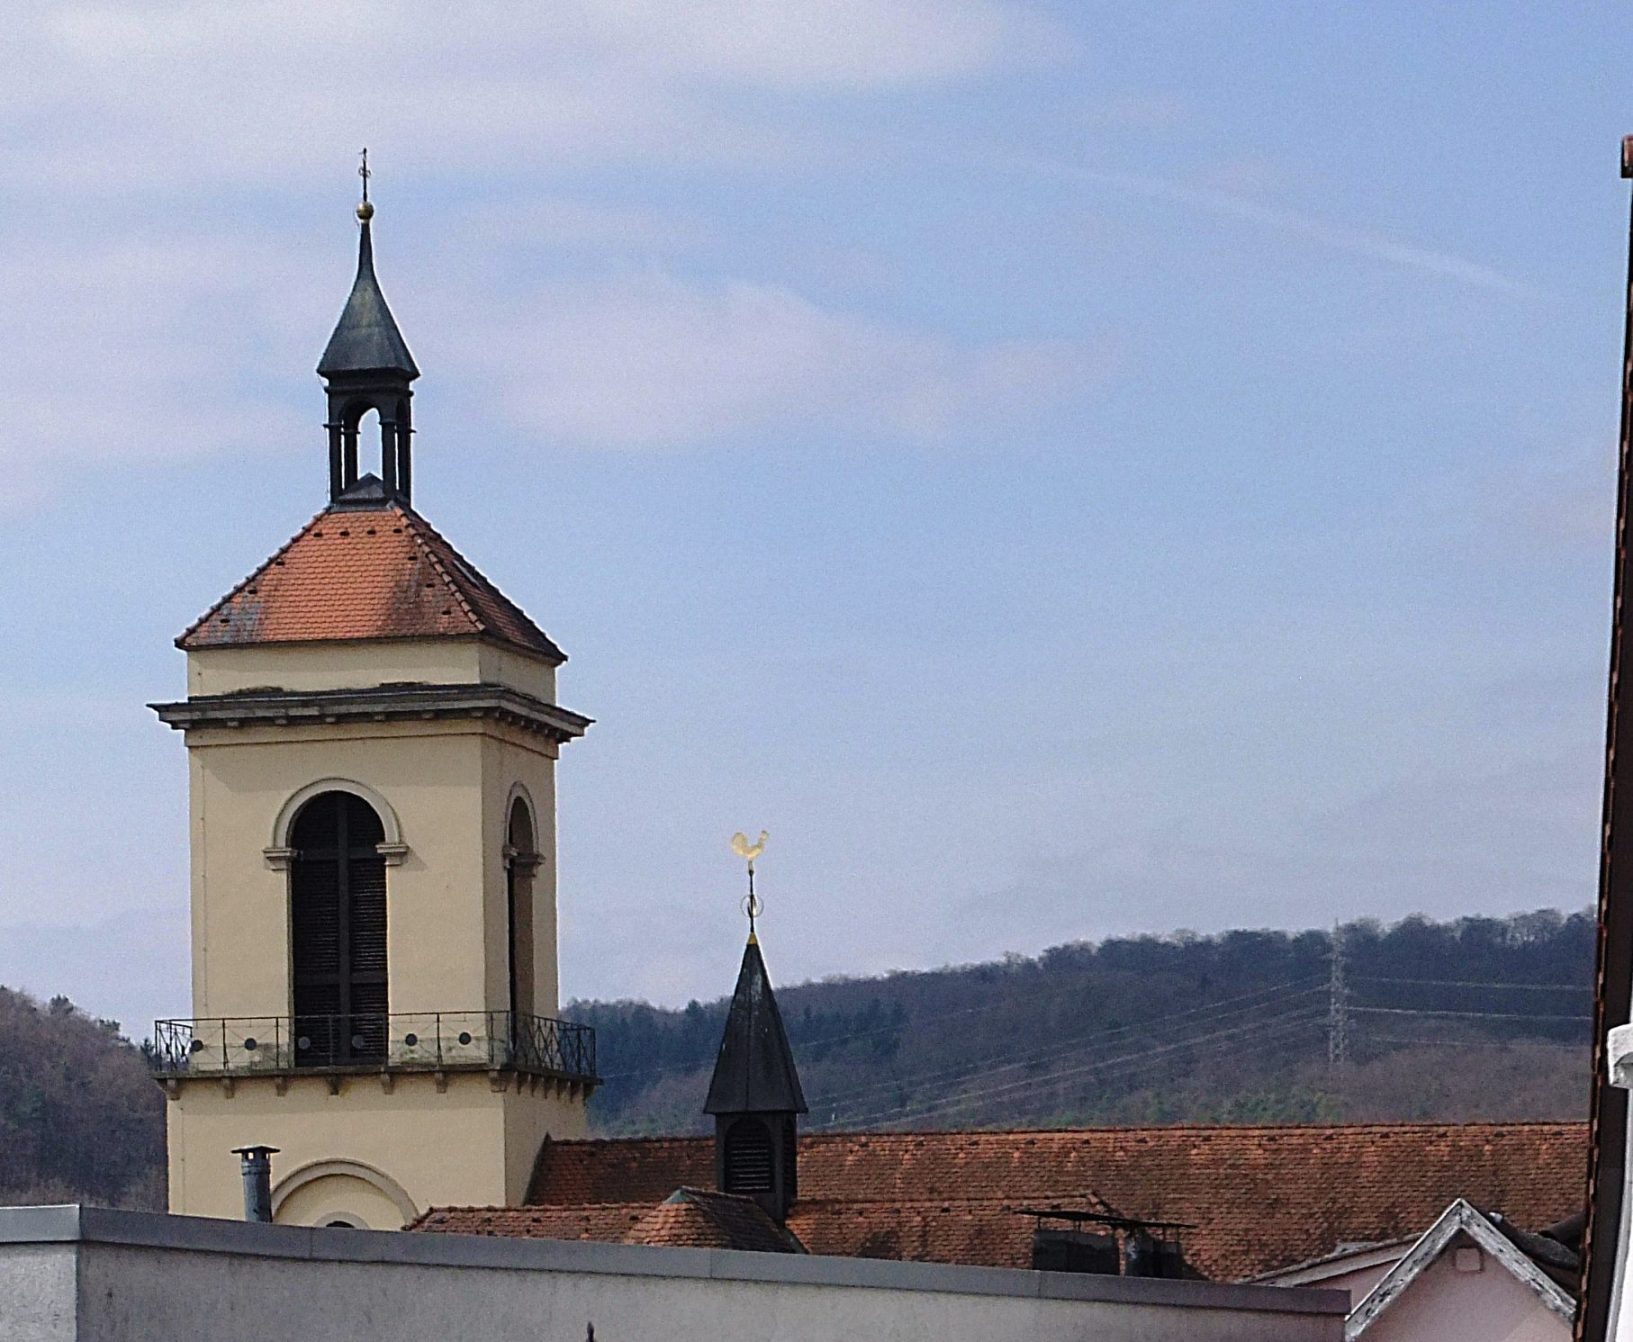 Turm und Dach von der Mettelnburg aus gesehen